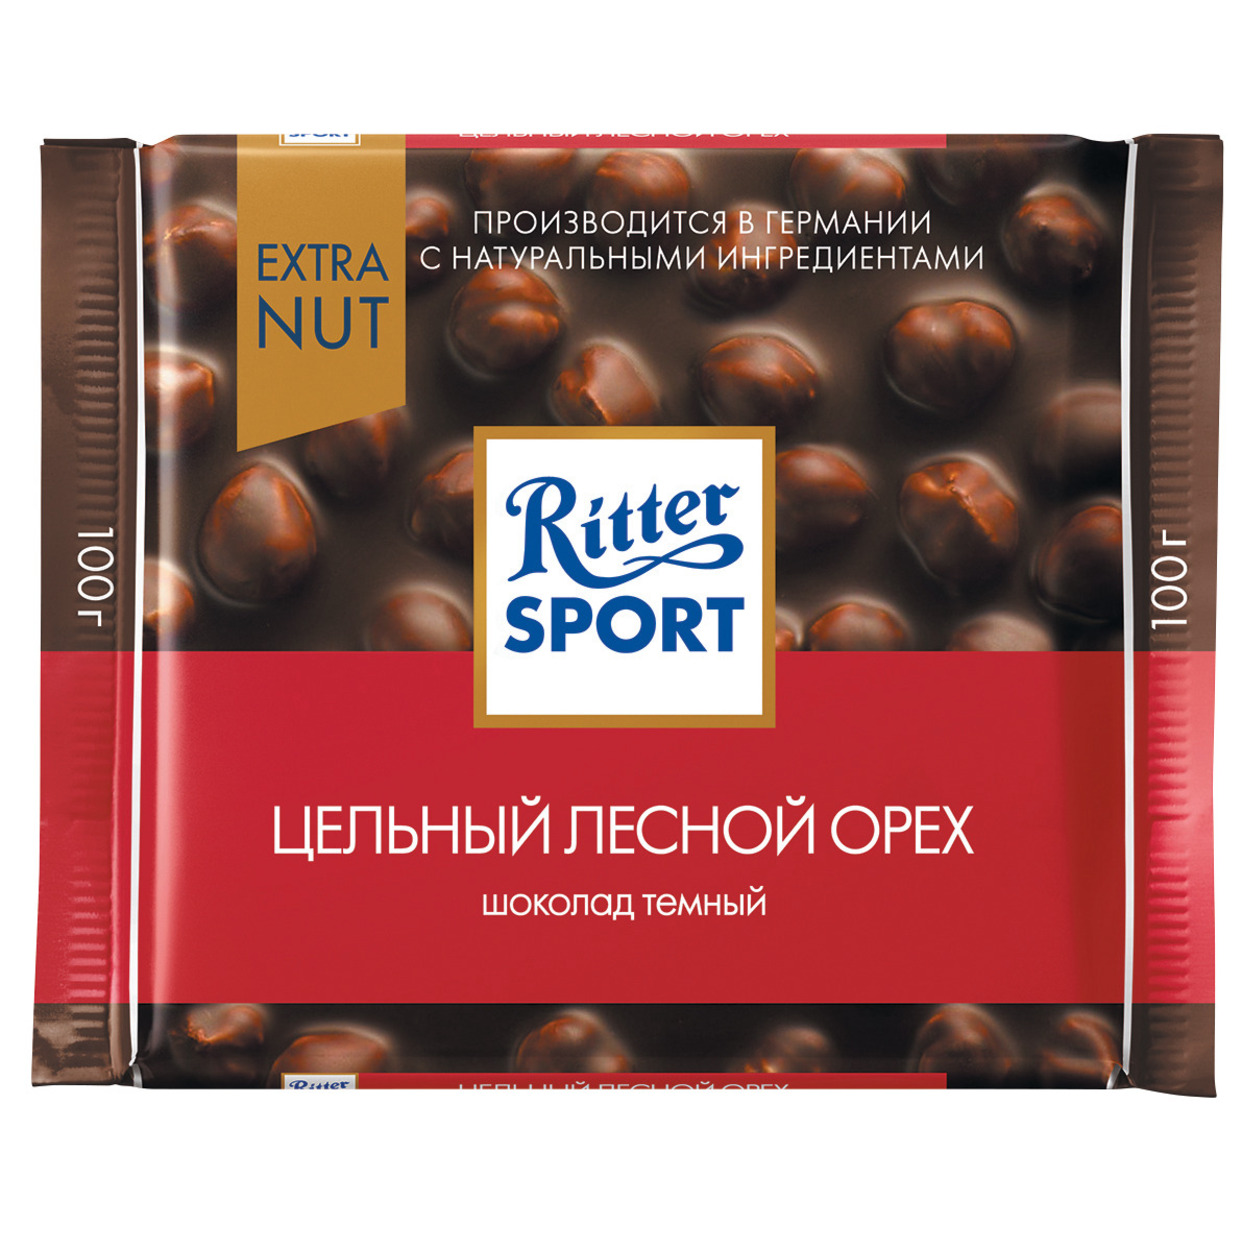 Шоколад Ritter Sport Темный Цельный лесной орех 100г по акции в Пятерочке